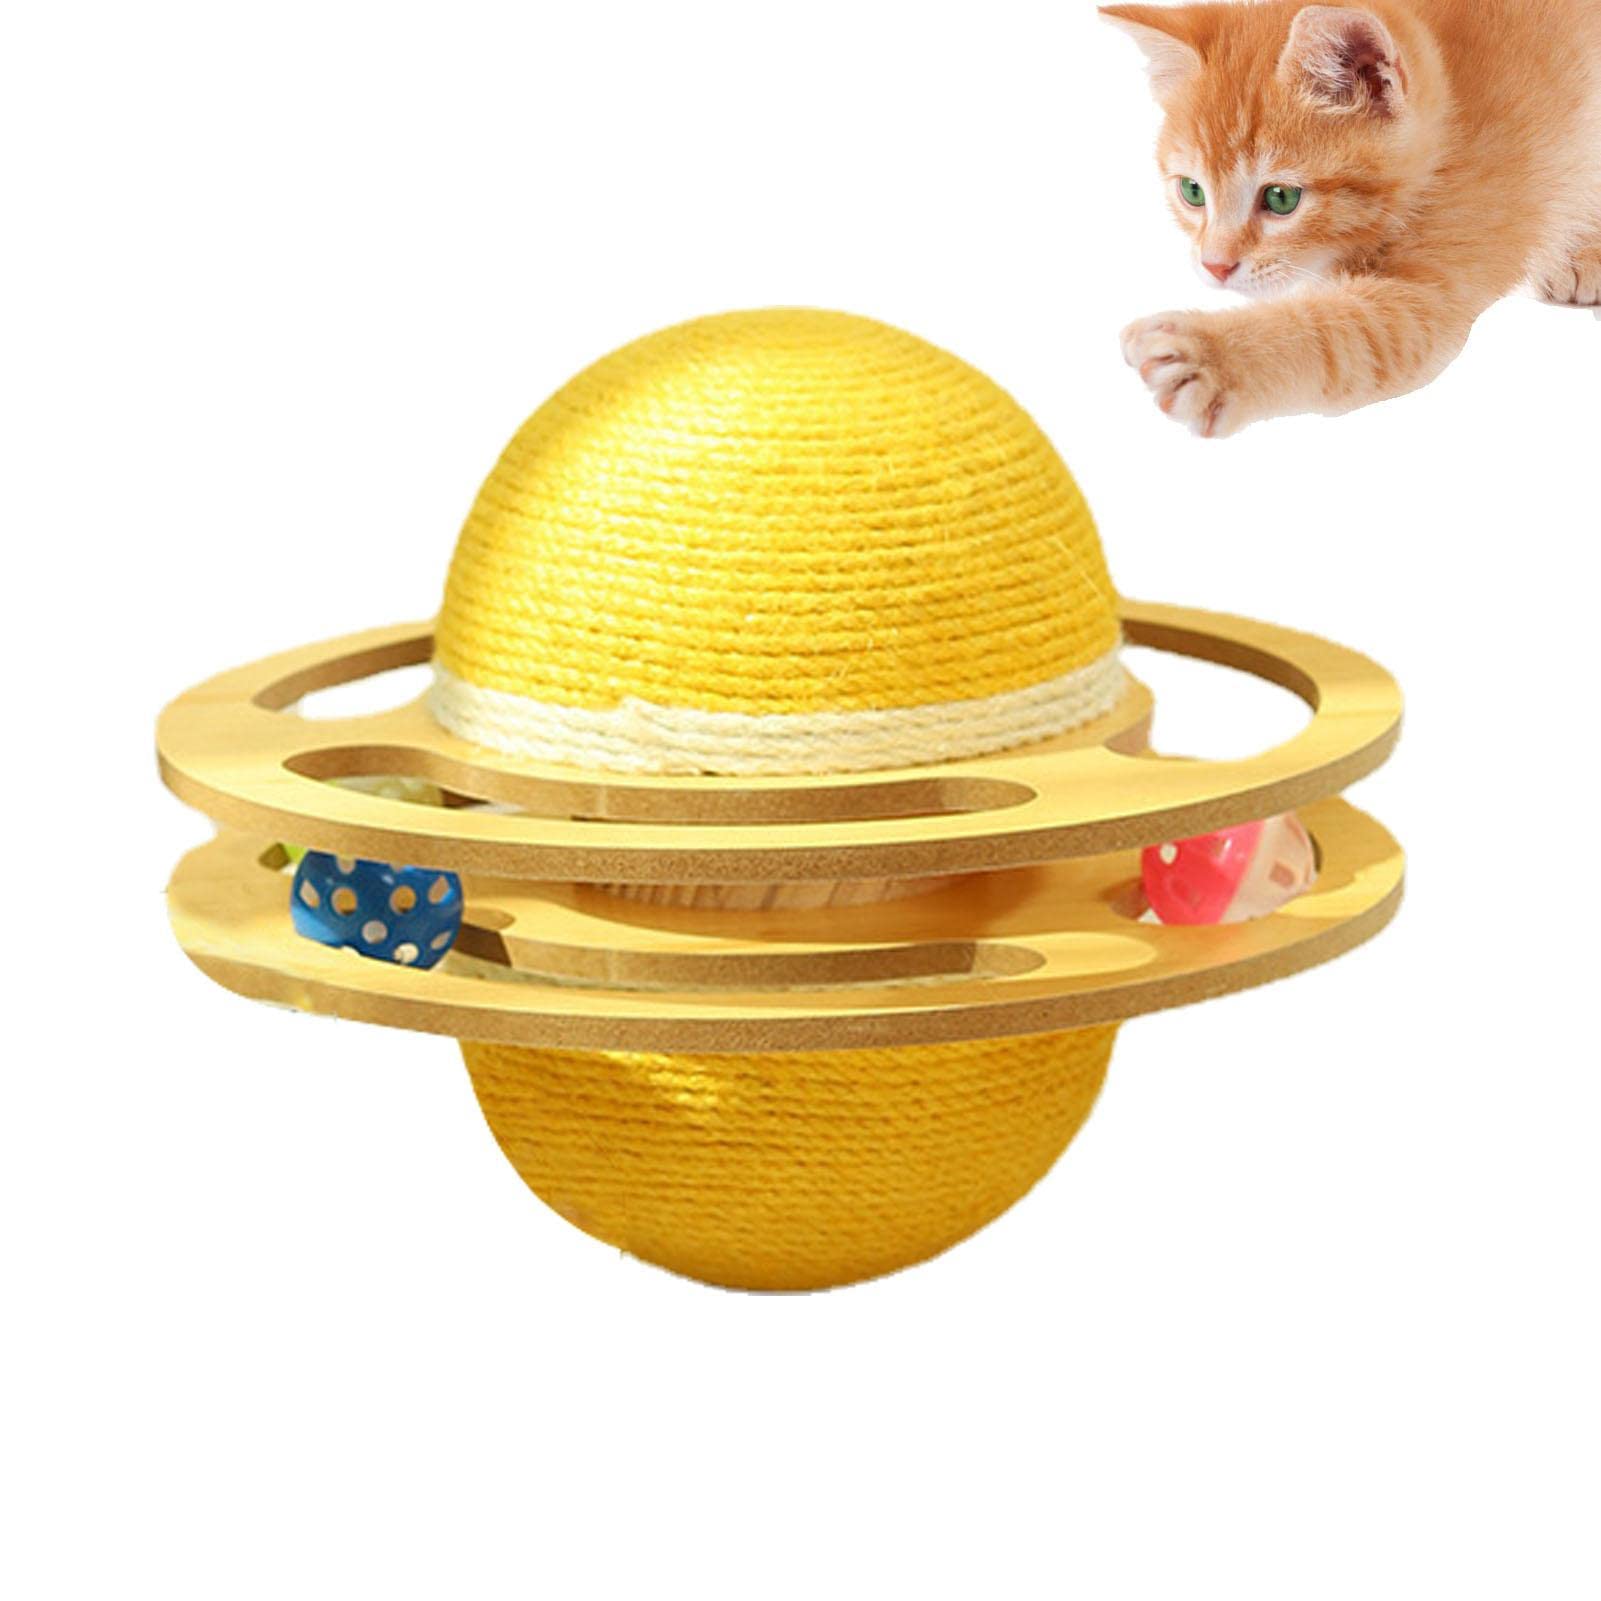 delr Interaktiver Katzenspielzeugball | Planet Design Spielzeug für Hauskatzen - Katzenspielzeug für den Innenbereich, natürliches Sisalseil, Katzenkratzer, automatisches interaktives Katzenspielzeug